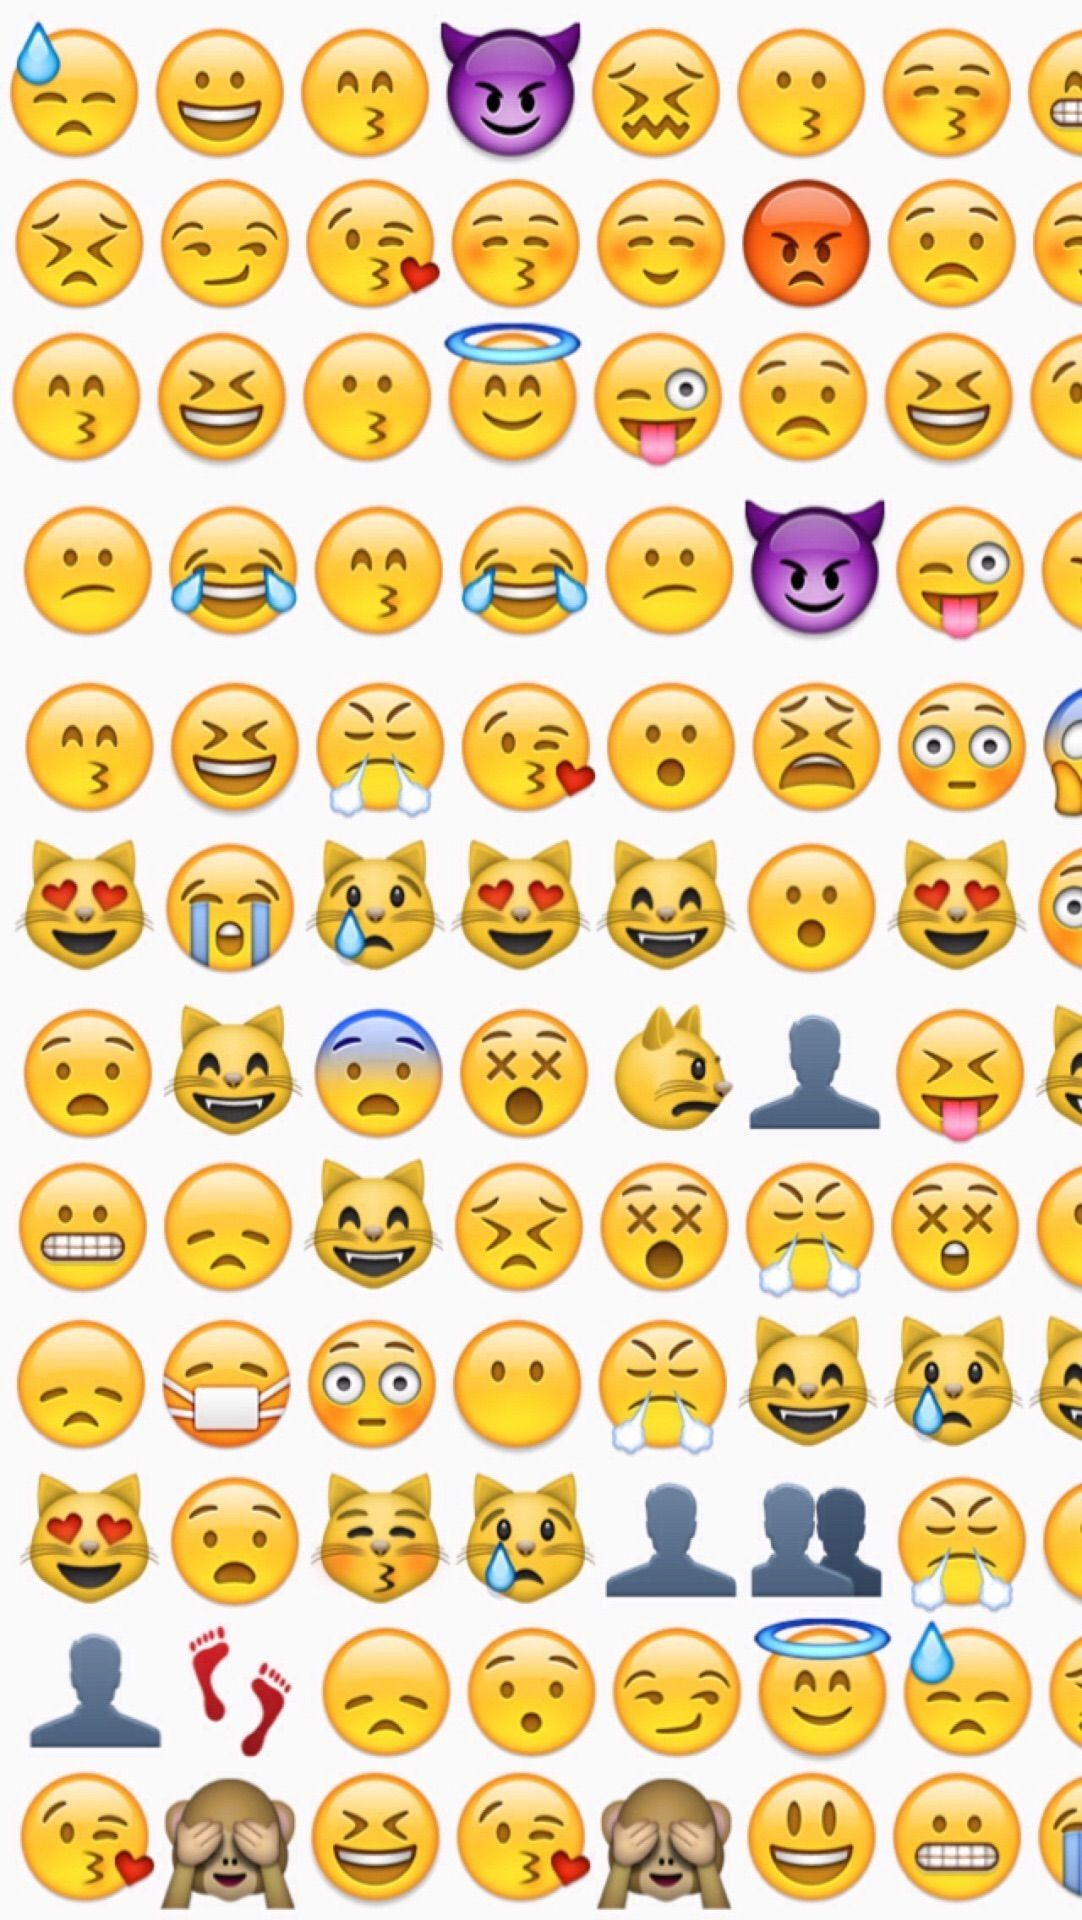 Emojis Wallpaper iPhone Icons (más de 60 imágenes)